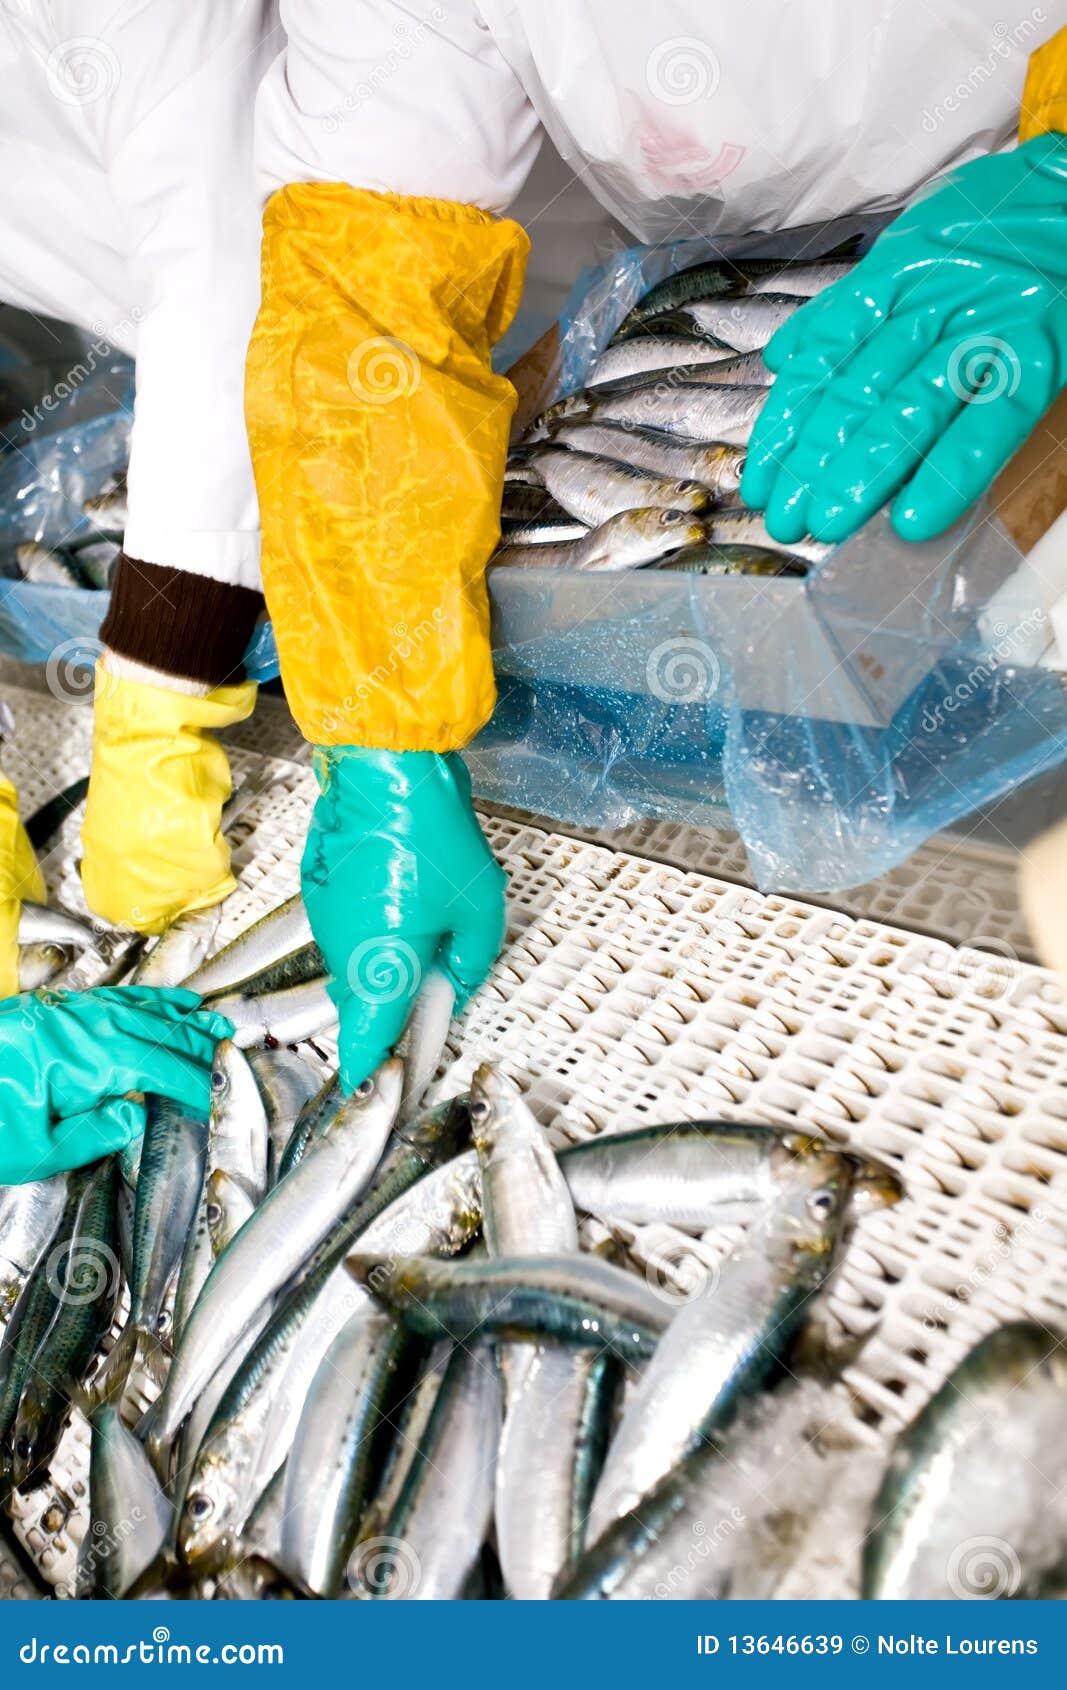 fish sorting